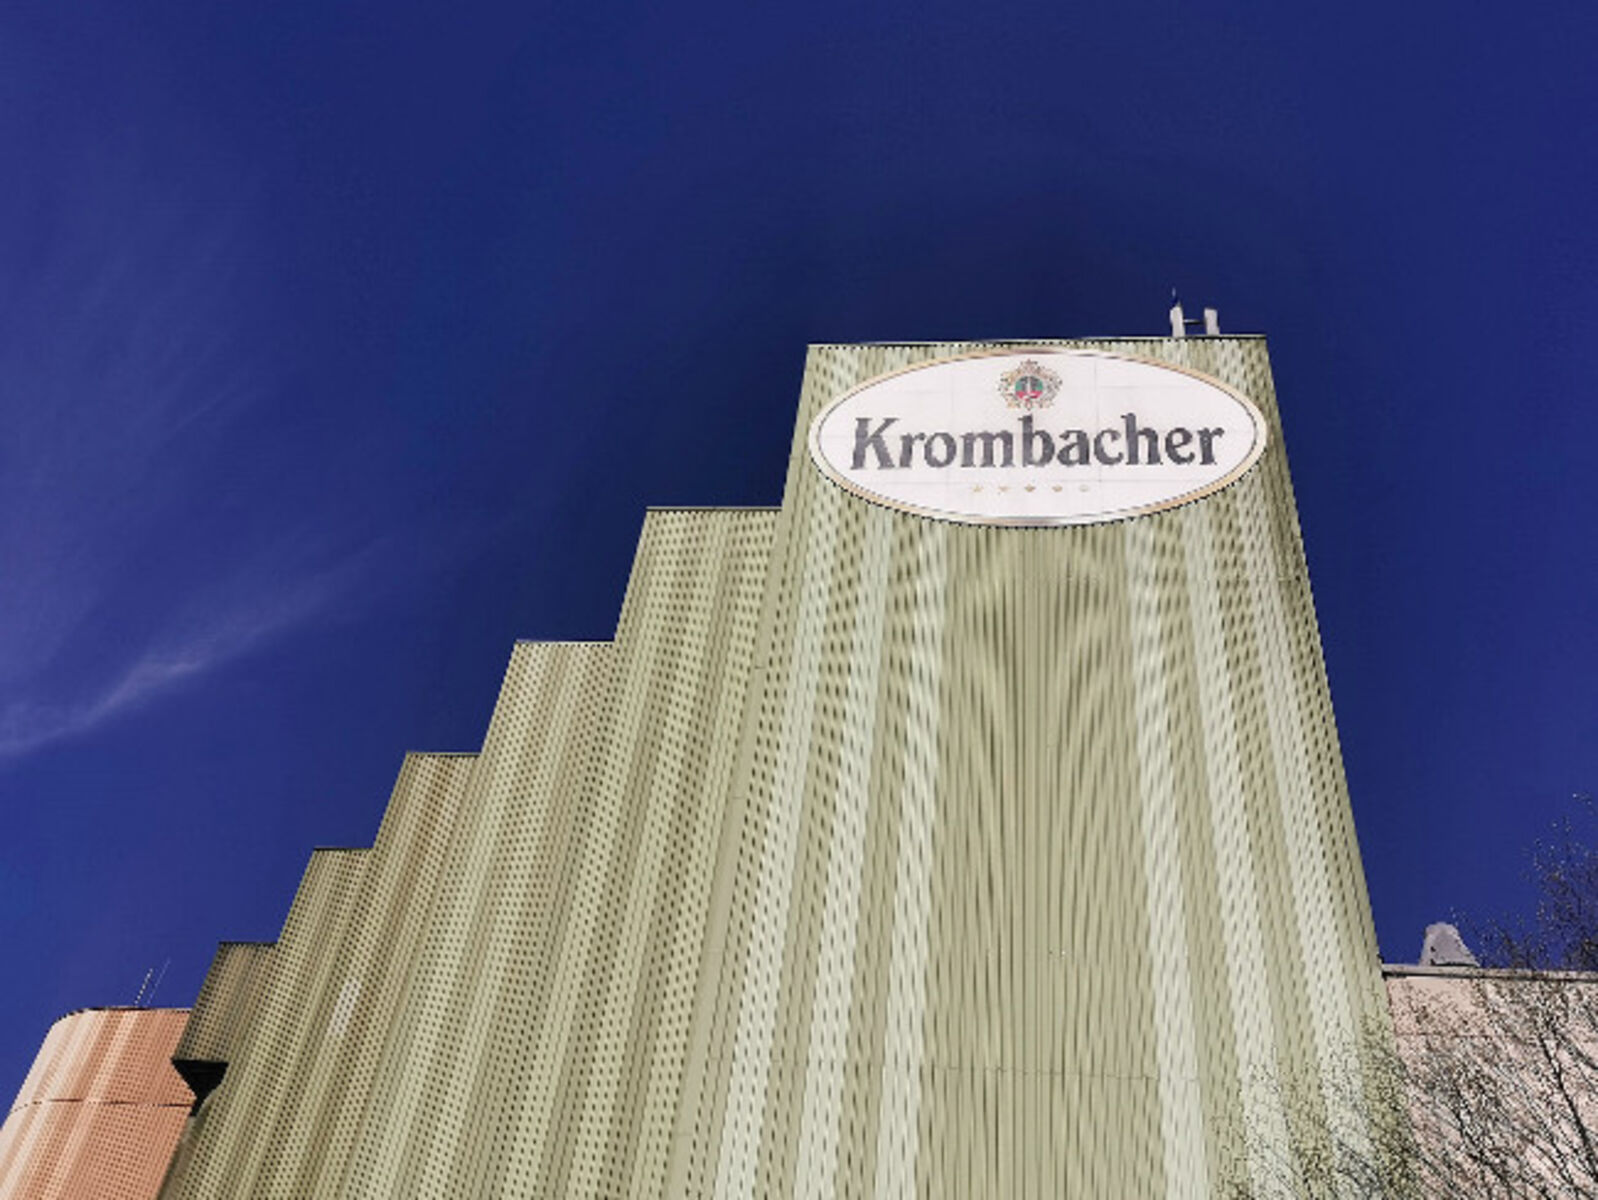 Krombacher Brauerei spendet eine Million Euro an den Corona-Nothilfefonds des Deutschen Roten Kreuzes